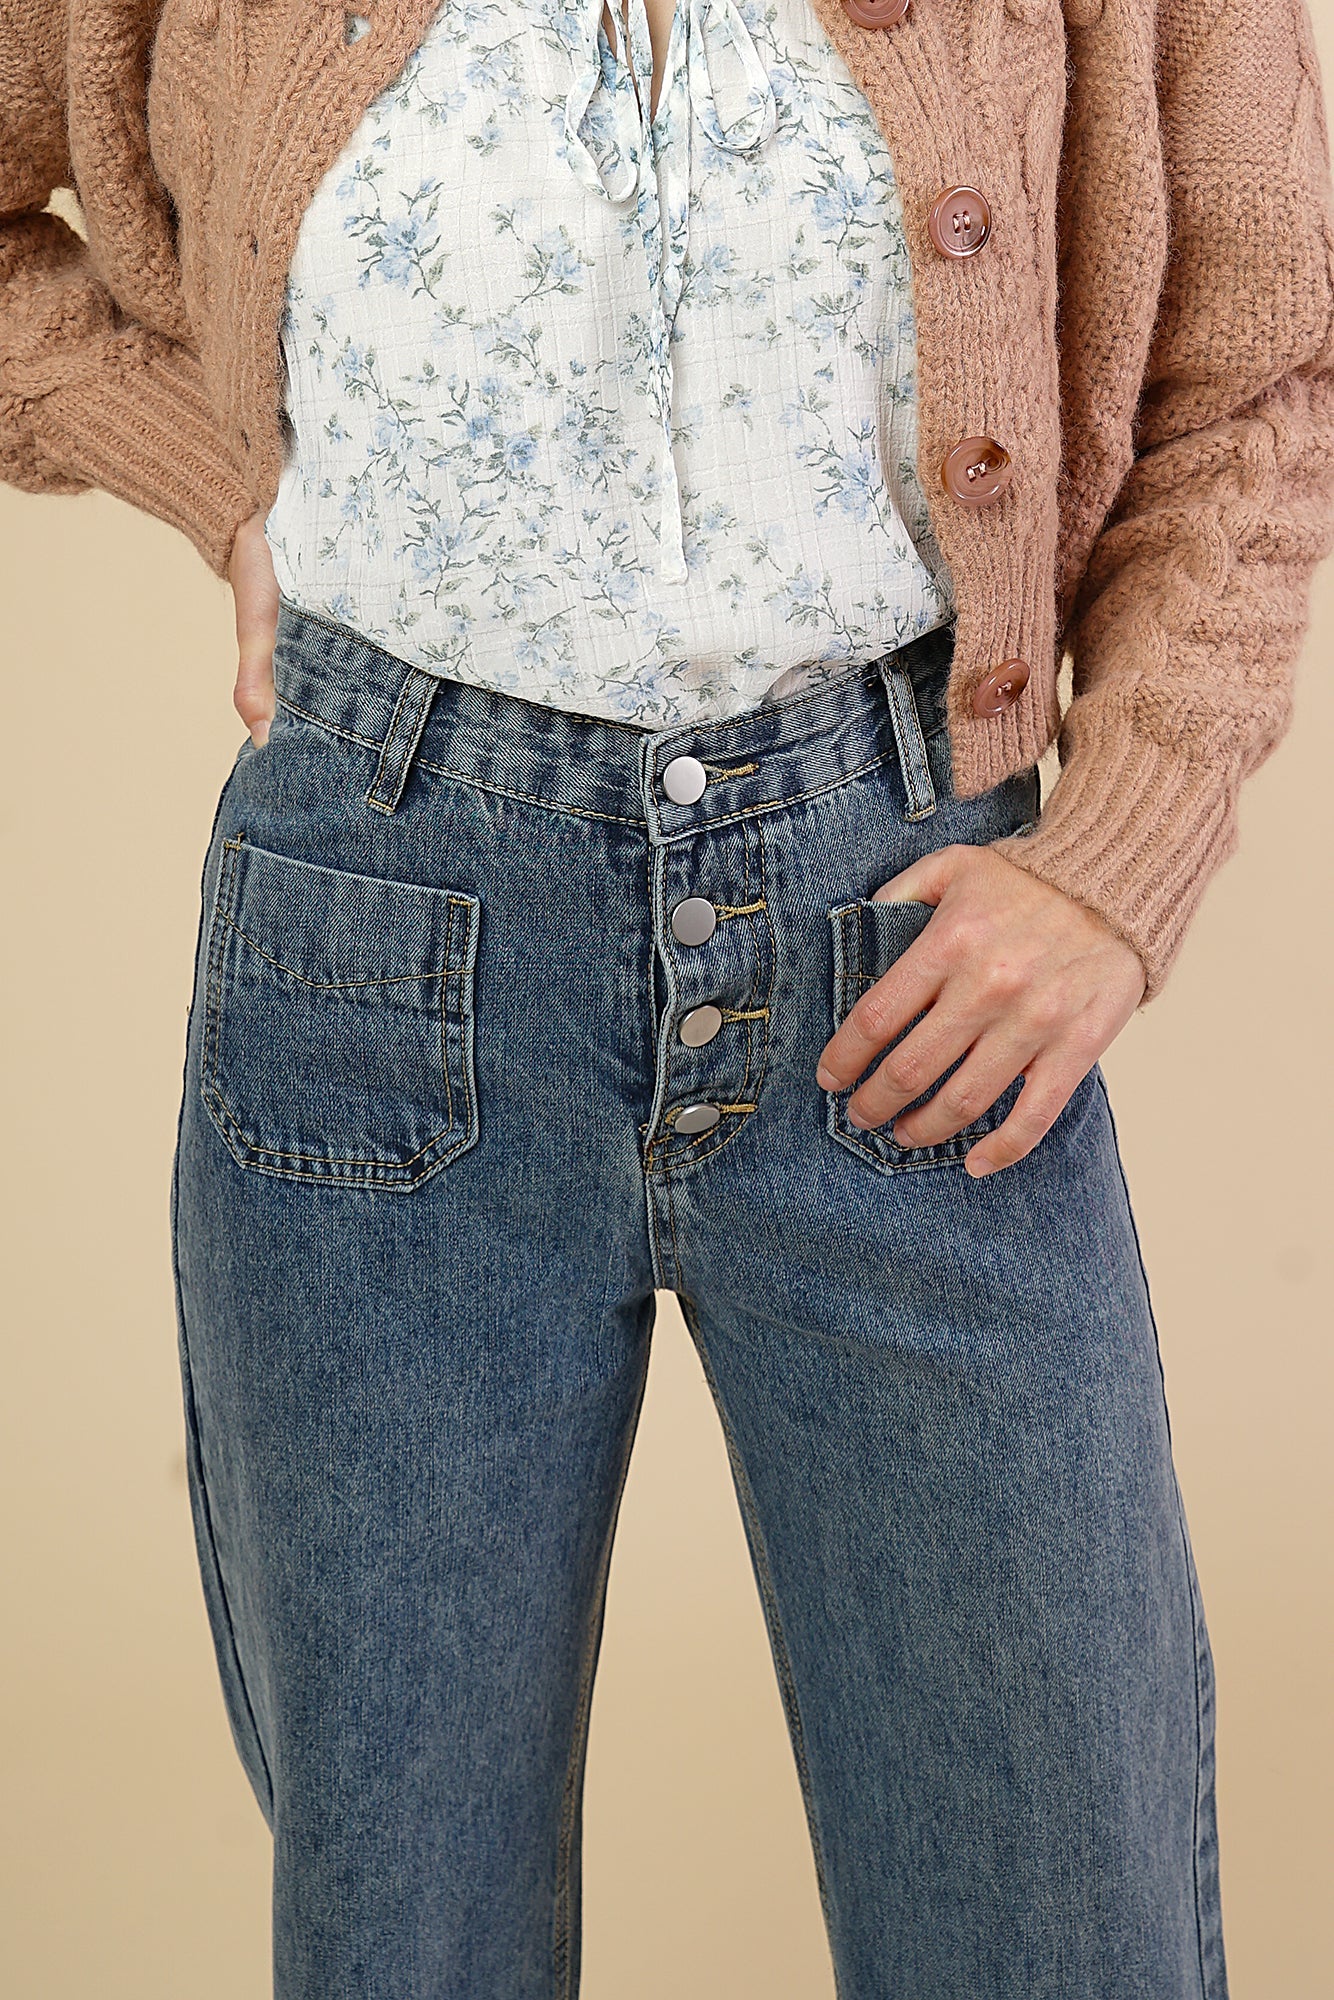 Shoppe Flora - Ava High Waisted Jeans